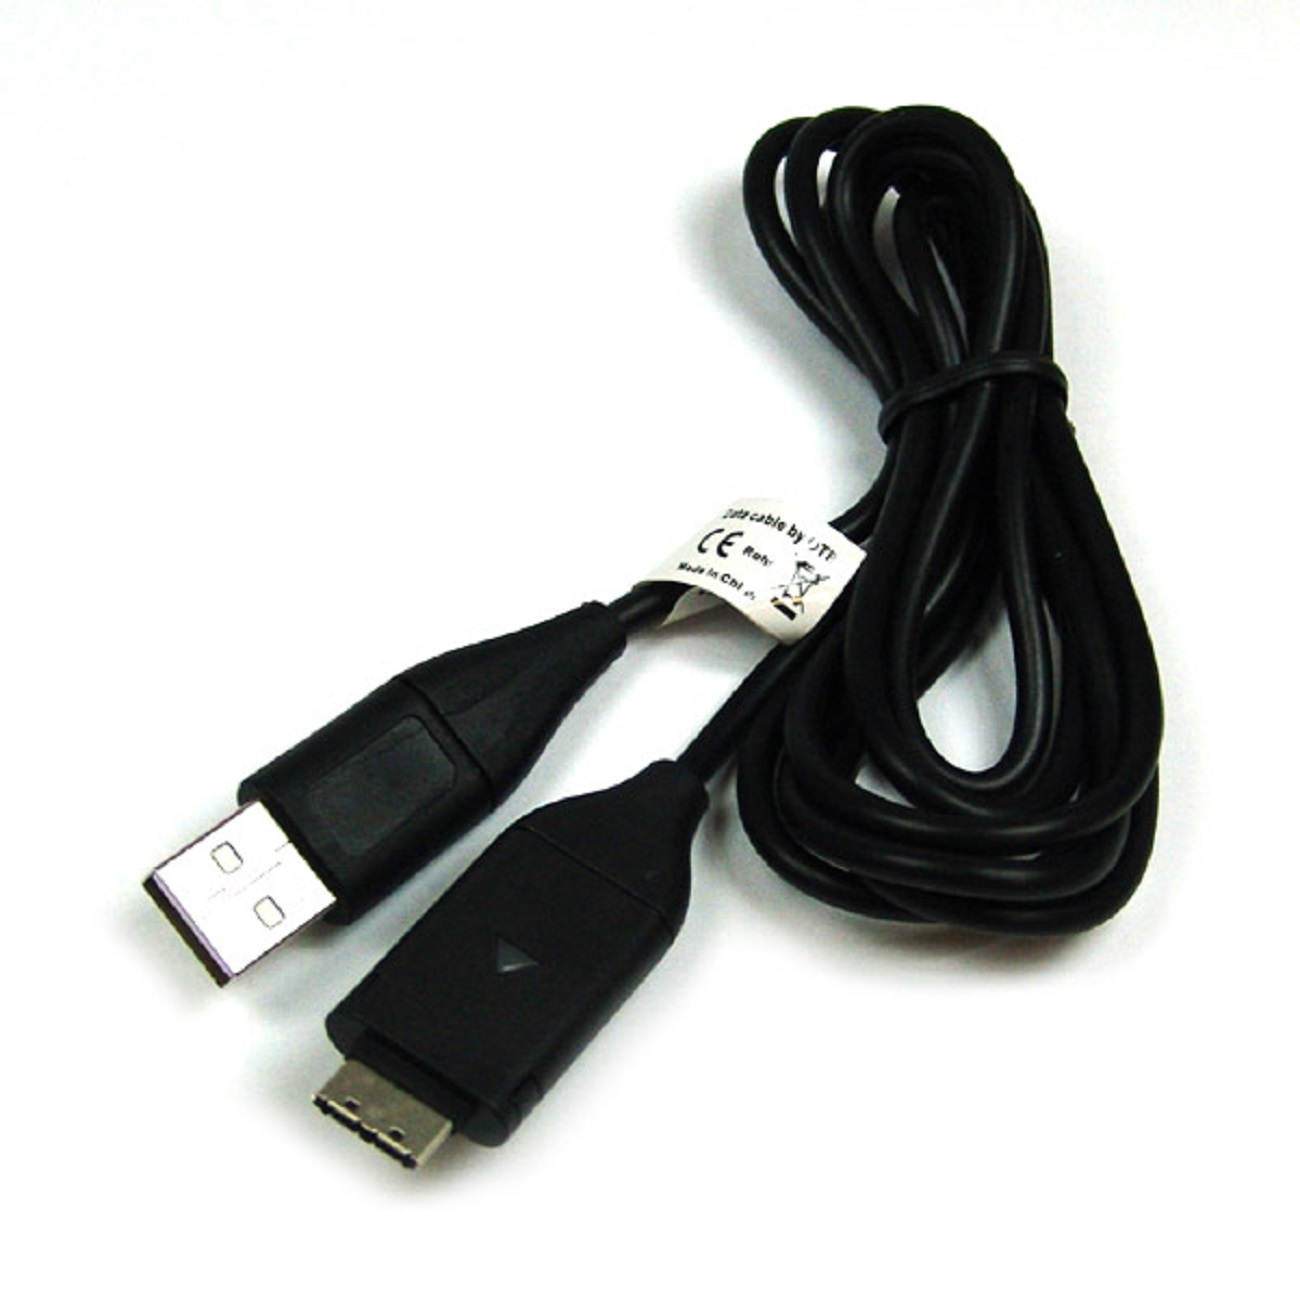 MOBILOTEC USB-Ladekabel kompatibel mit Samsung Zubehör PL51 Samsung, schwarz